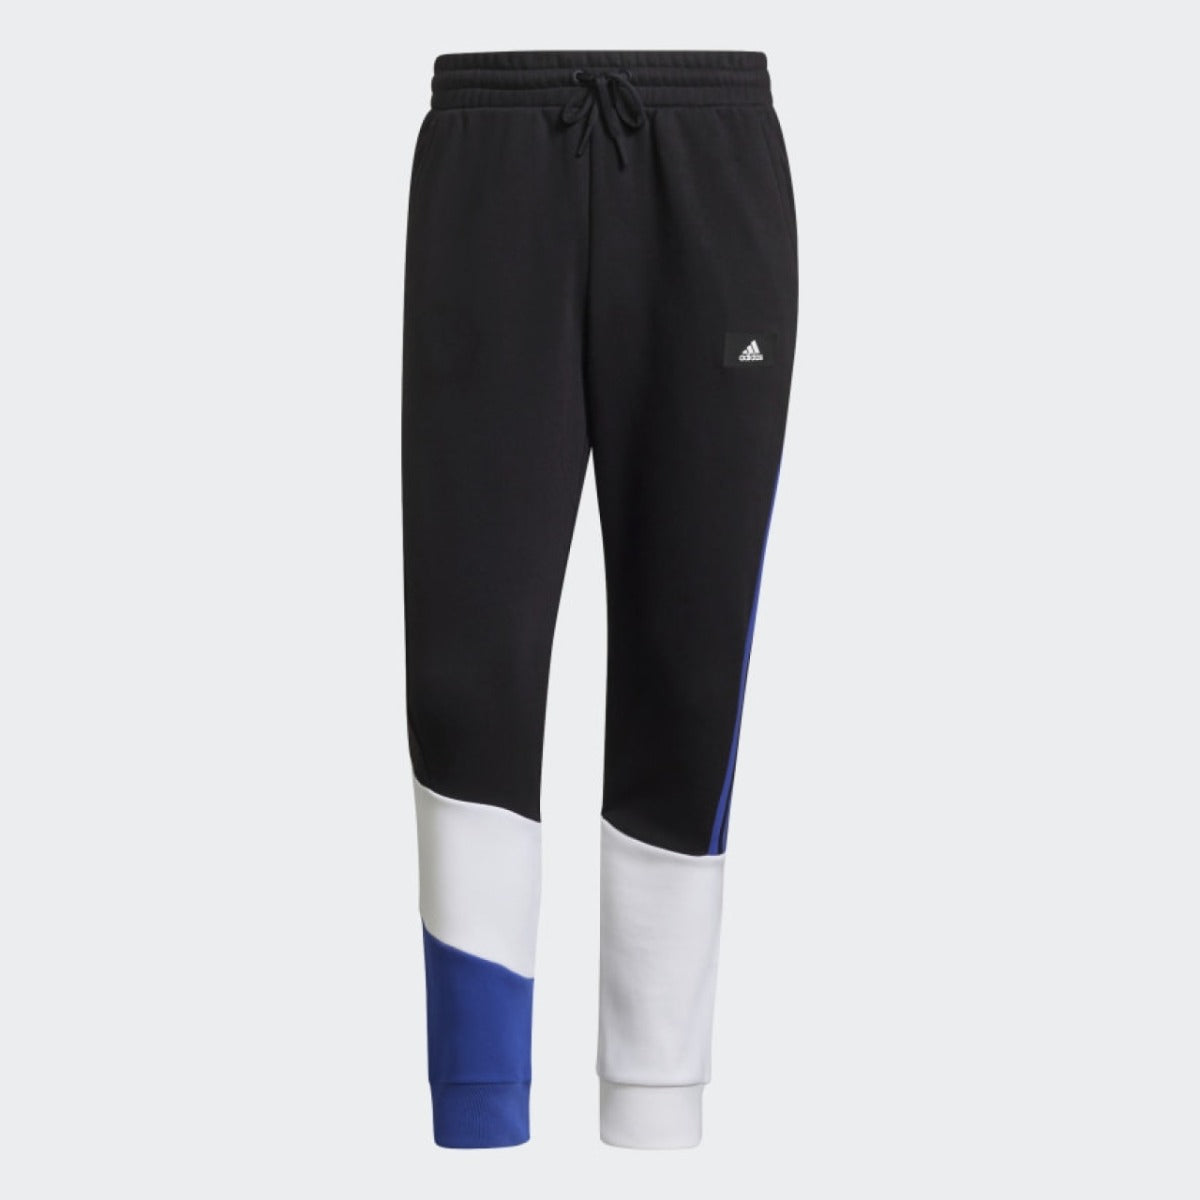 Pantalon Adidas Sportswear Colorblock - Noir/Bleu/Blanc